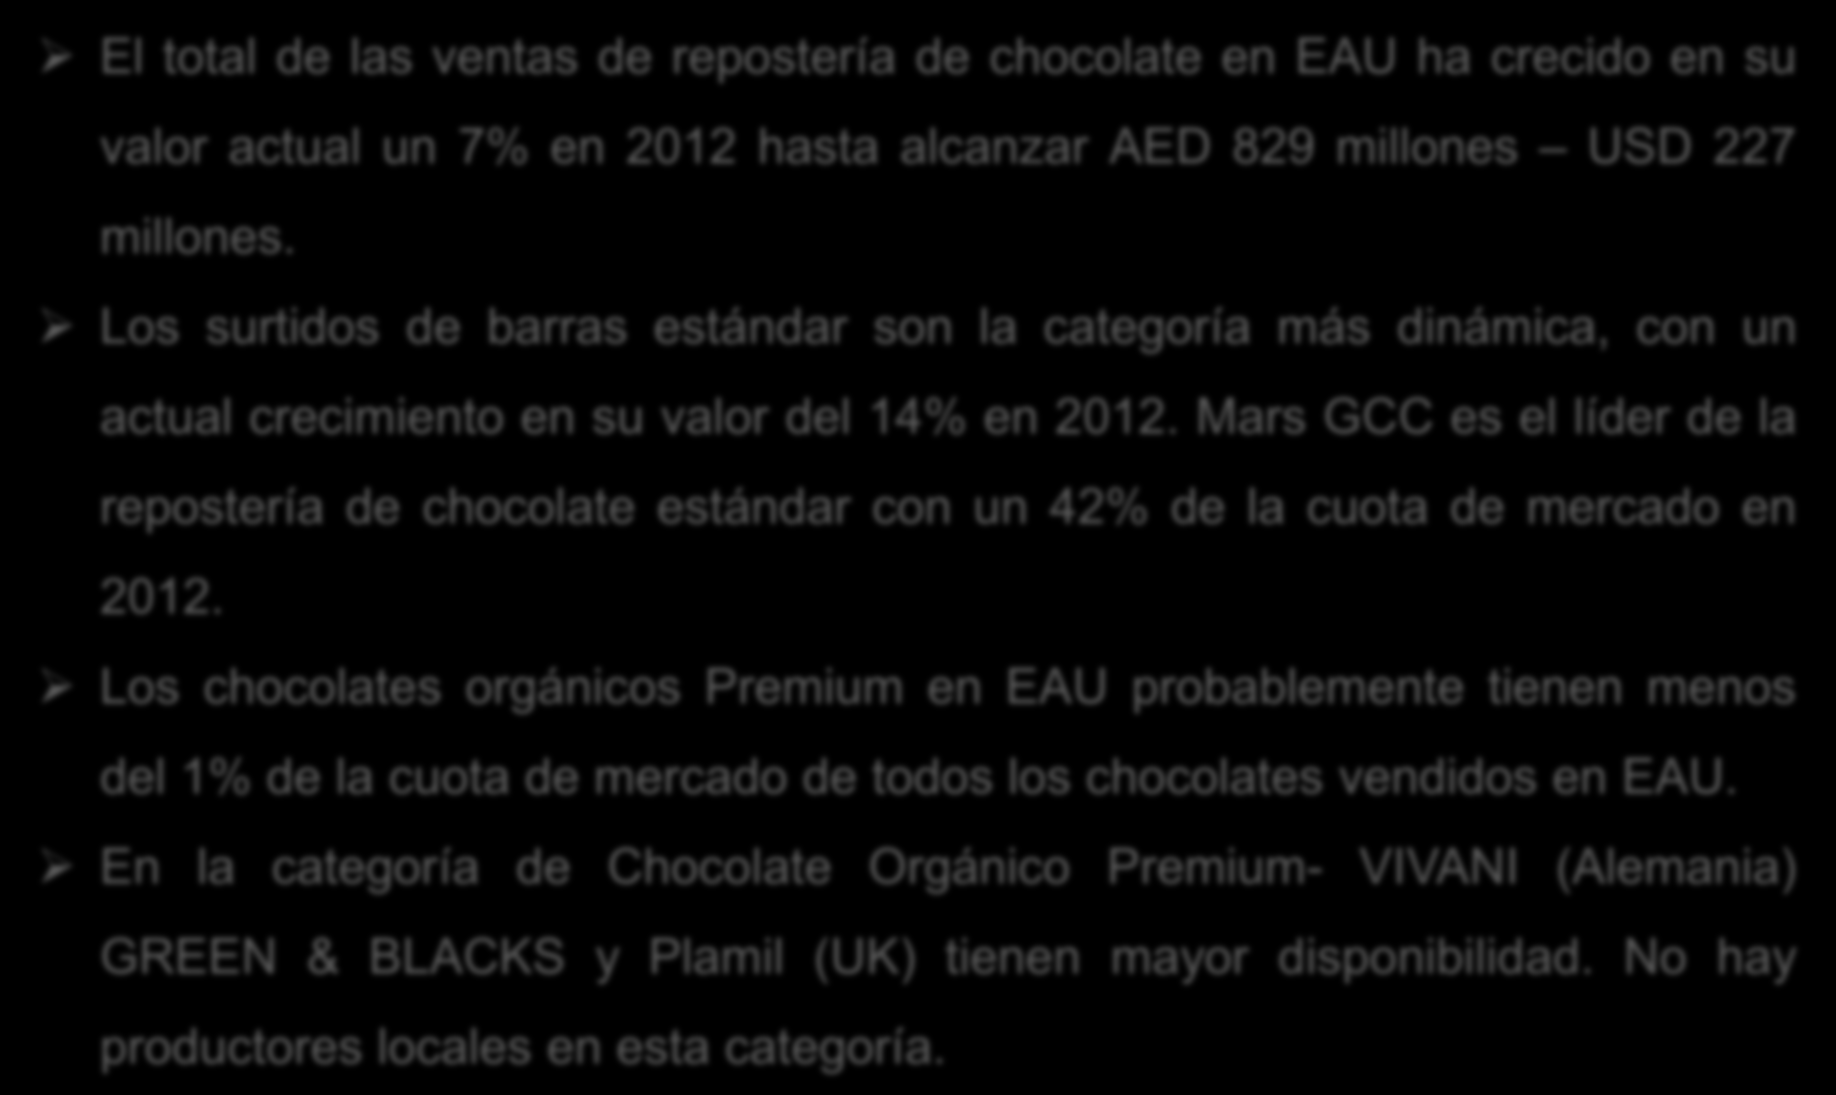 Evolución y Márgenes Comerciales El total de las ventas de repostería de chocolate en EAU ha crecido en su valor actual un 7% en 2012 hasta alcanzar AED 829 millones USD 227 millones.